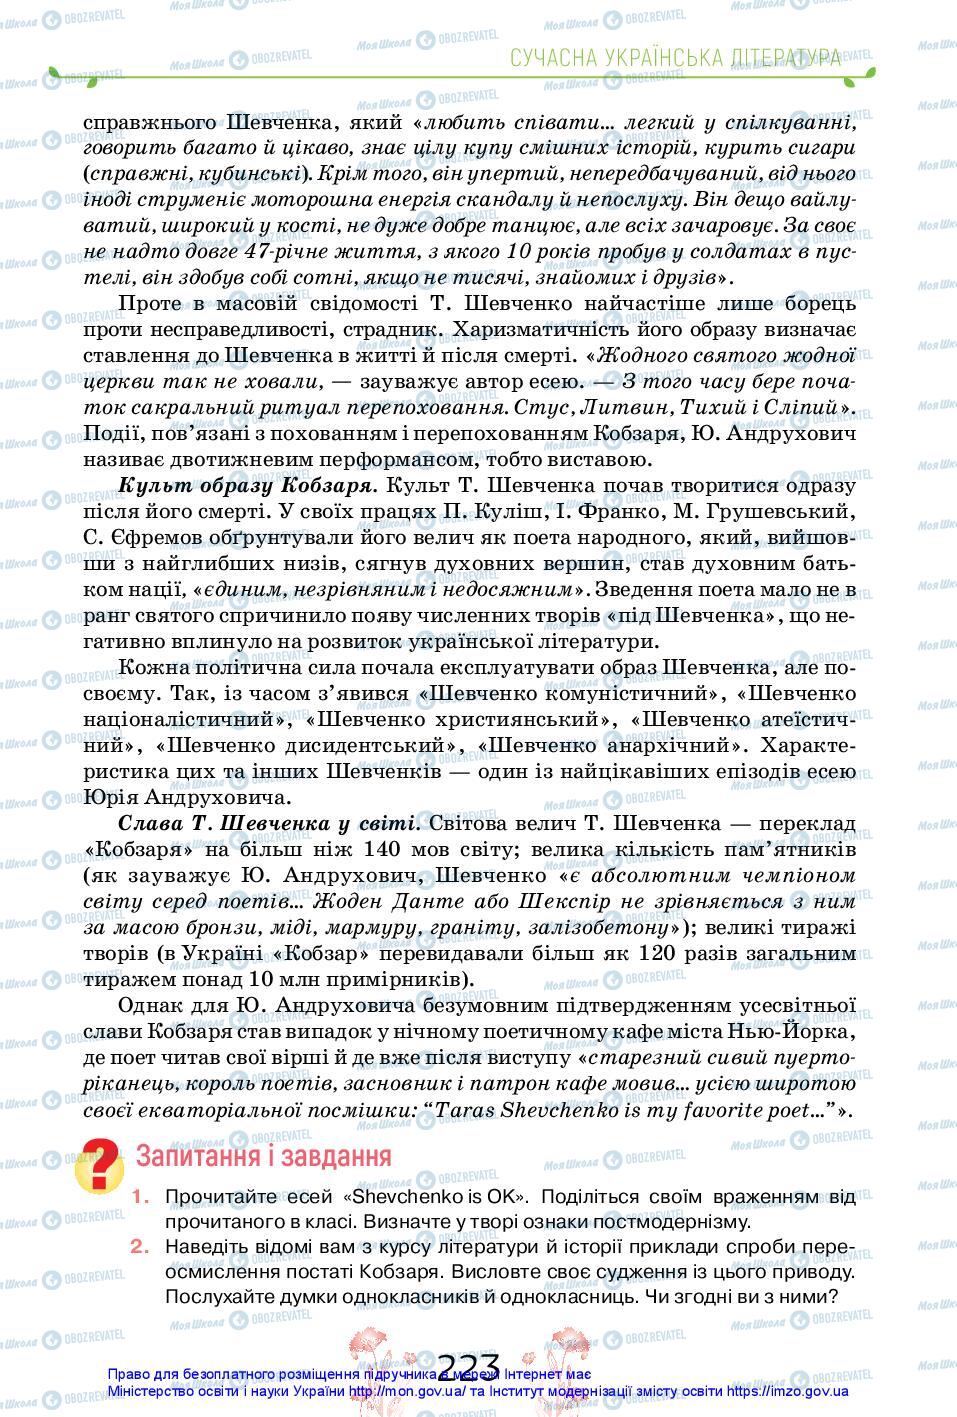 Підручники Українська література 11 клас сторінка 223